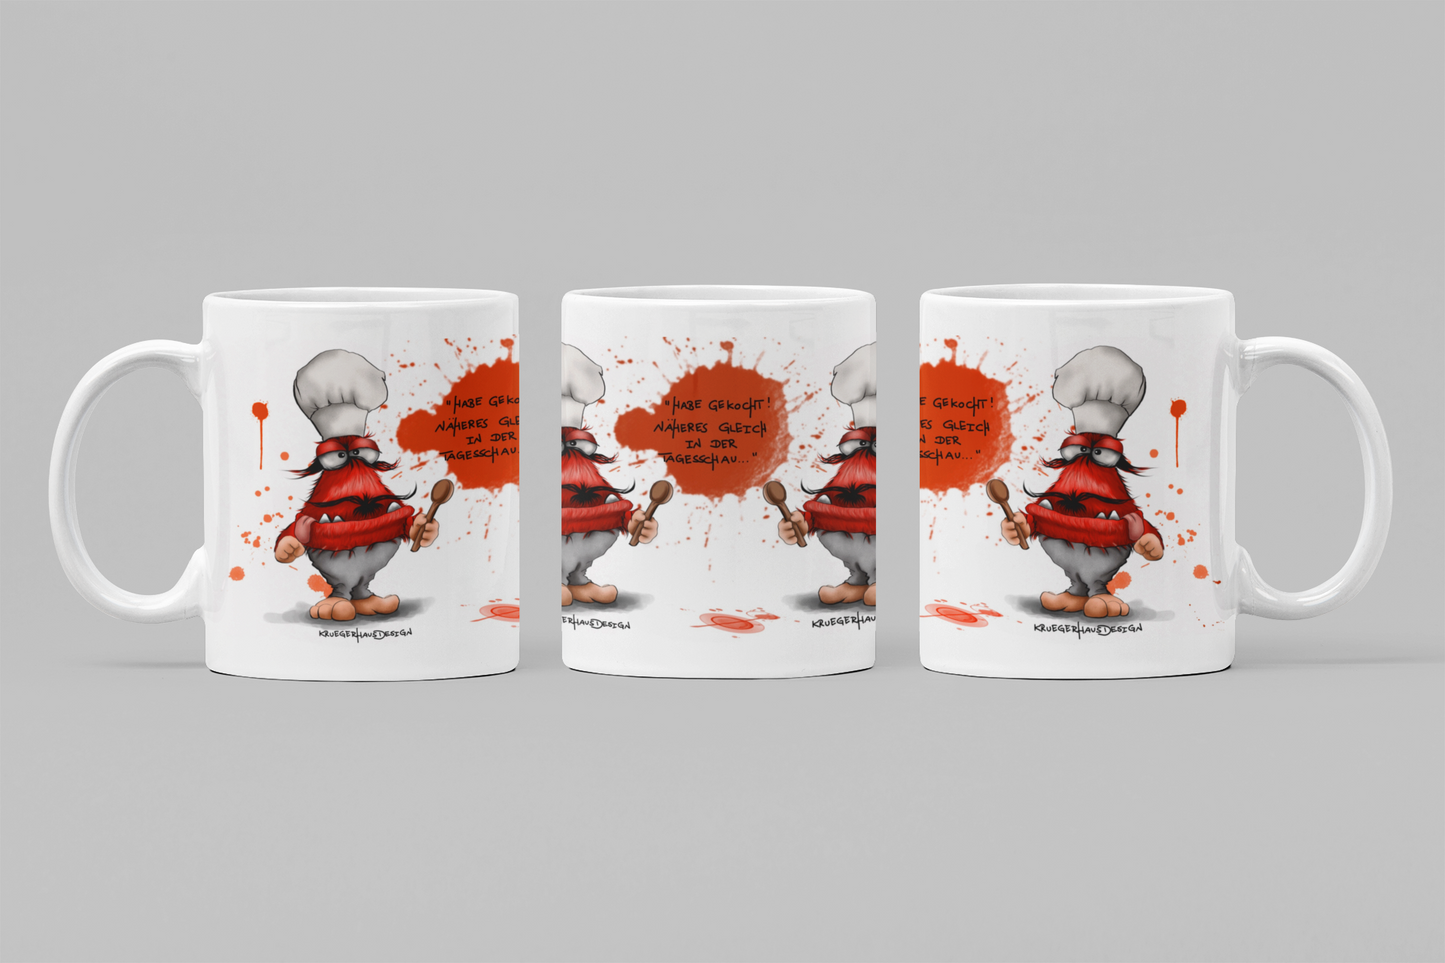 Tasse, Kaffeetasse Kruegerhausdesign Monster und Spruch "Habe gekocht..." 2. Variante Volldruck